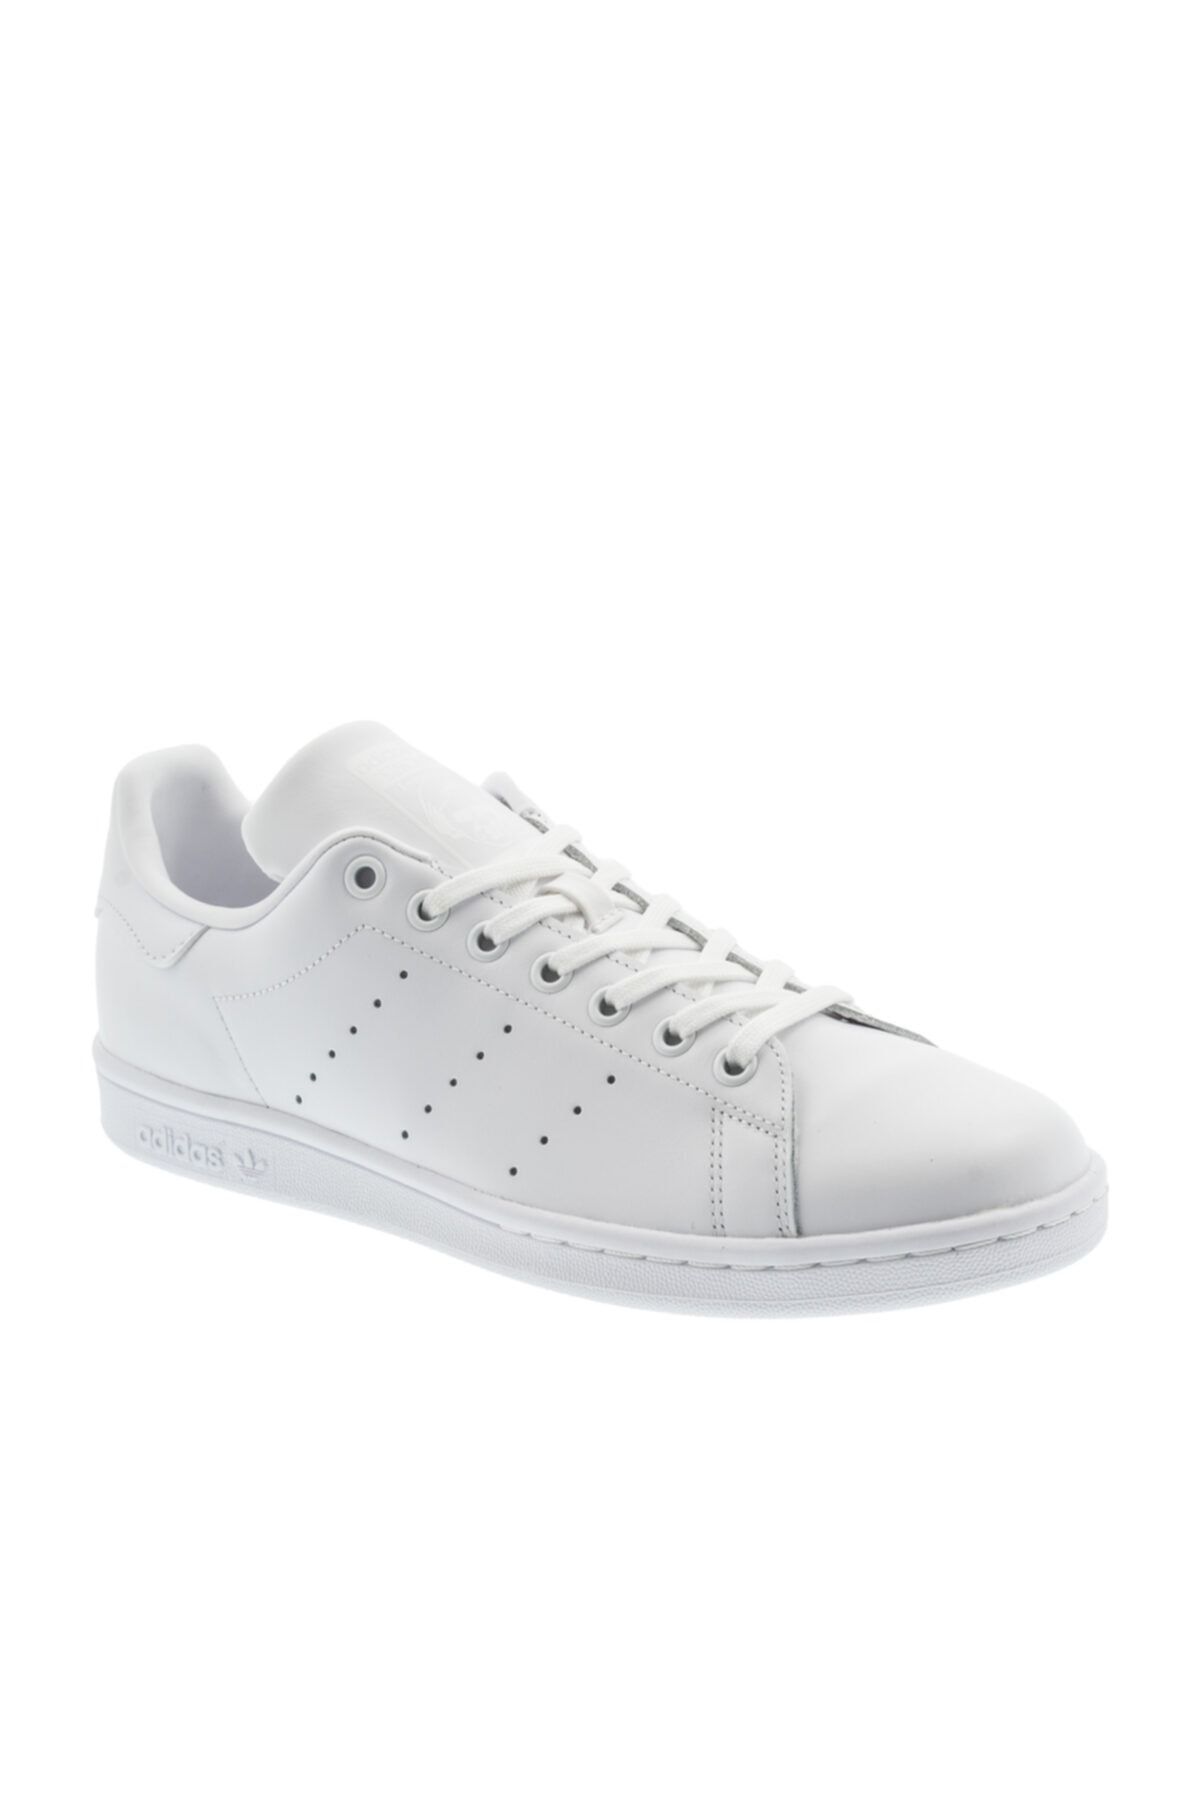 adidas STAN SMITH Beyaz Erkek Sneaker Ayakkabı 100293651